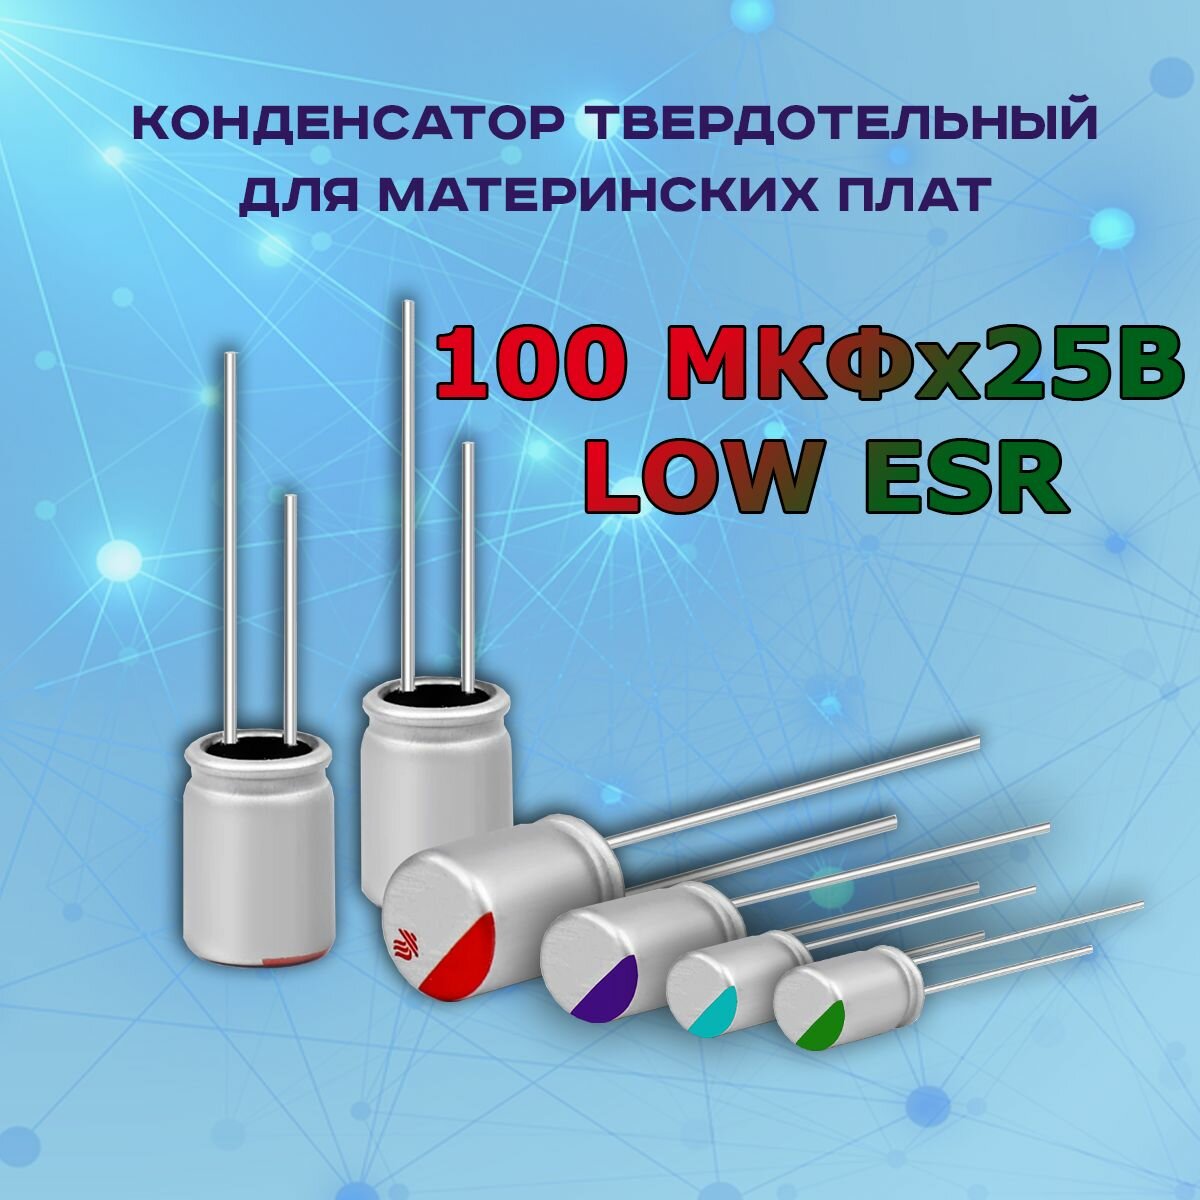 Конденсатор для материнской платы твердотельный 100 микрофарат 25 Вольт 100 МКФх25В LOW ESR - 1 шт.